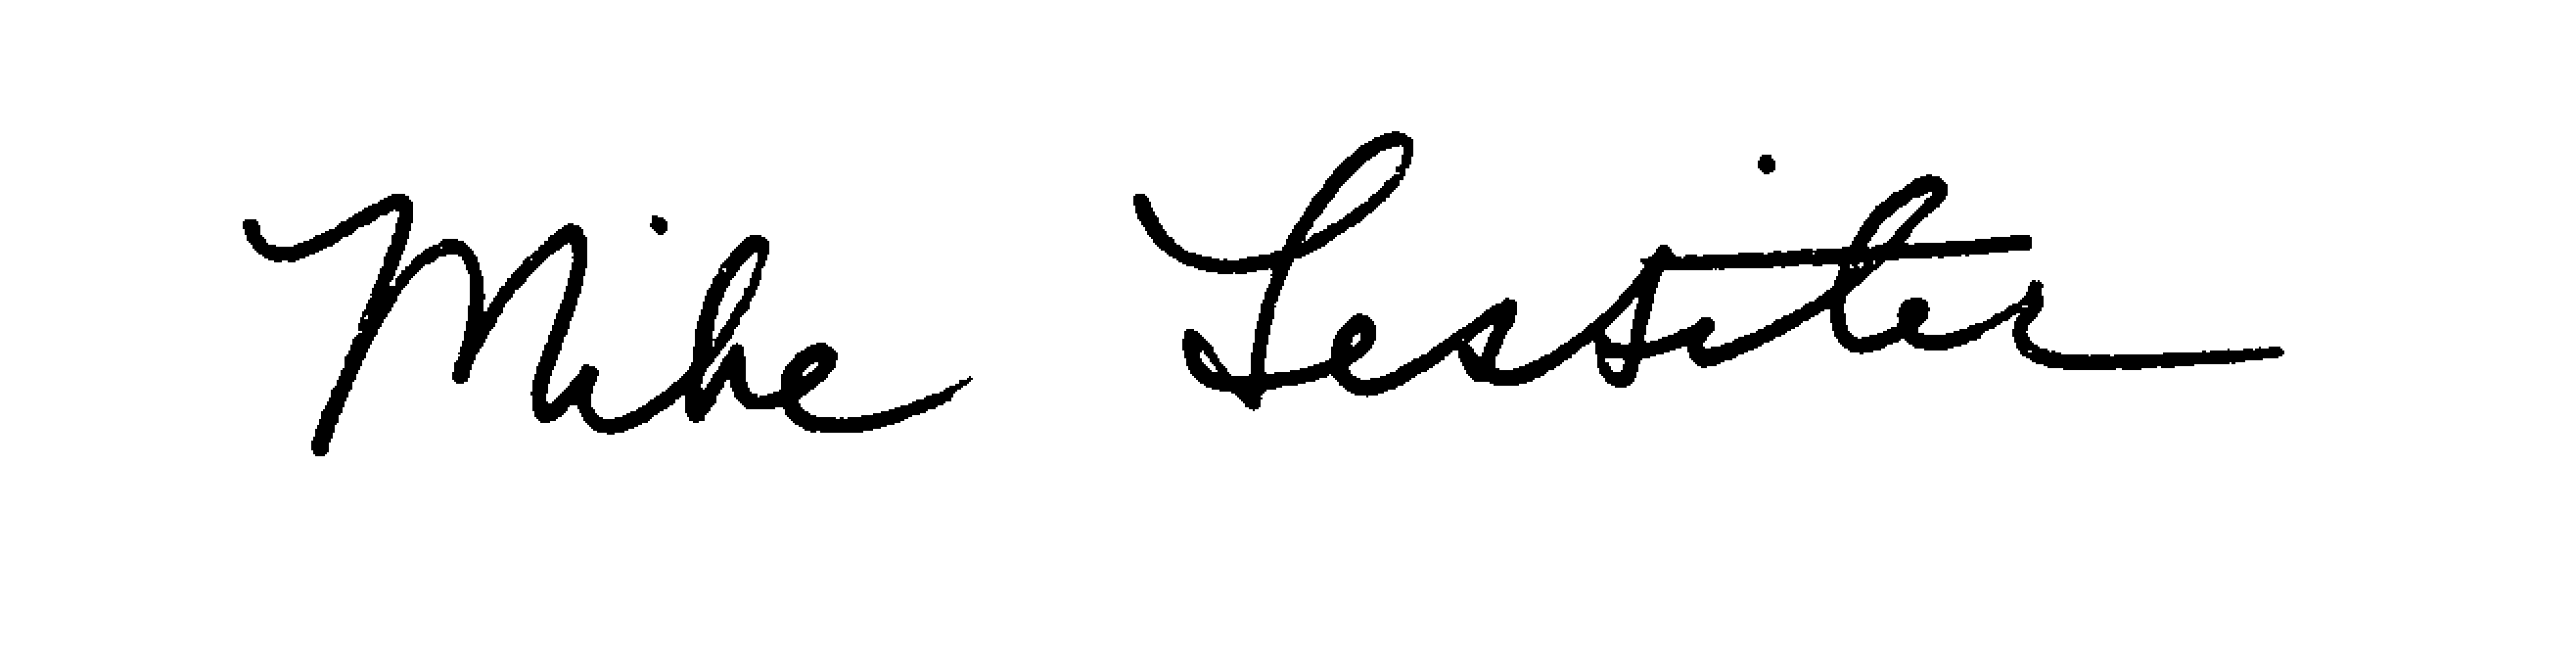 Mike Lessiter signature